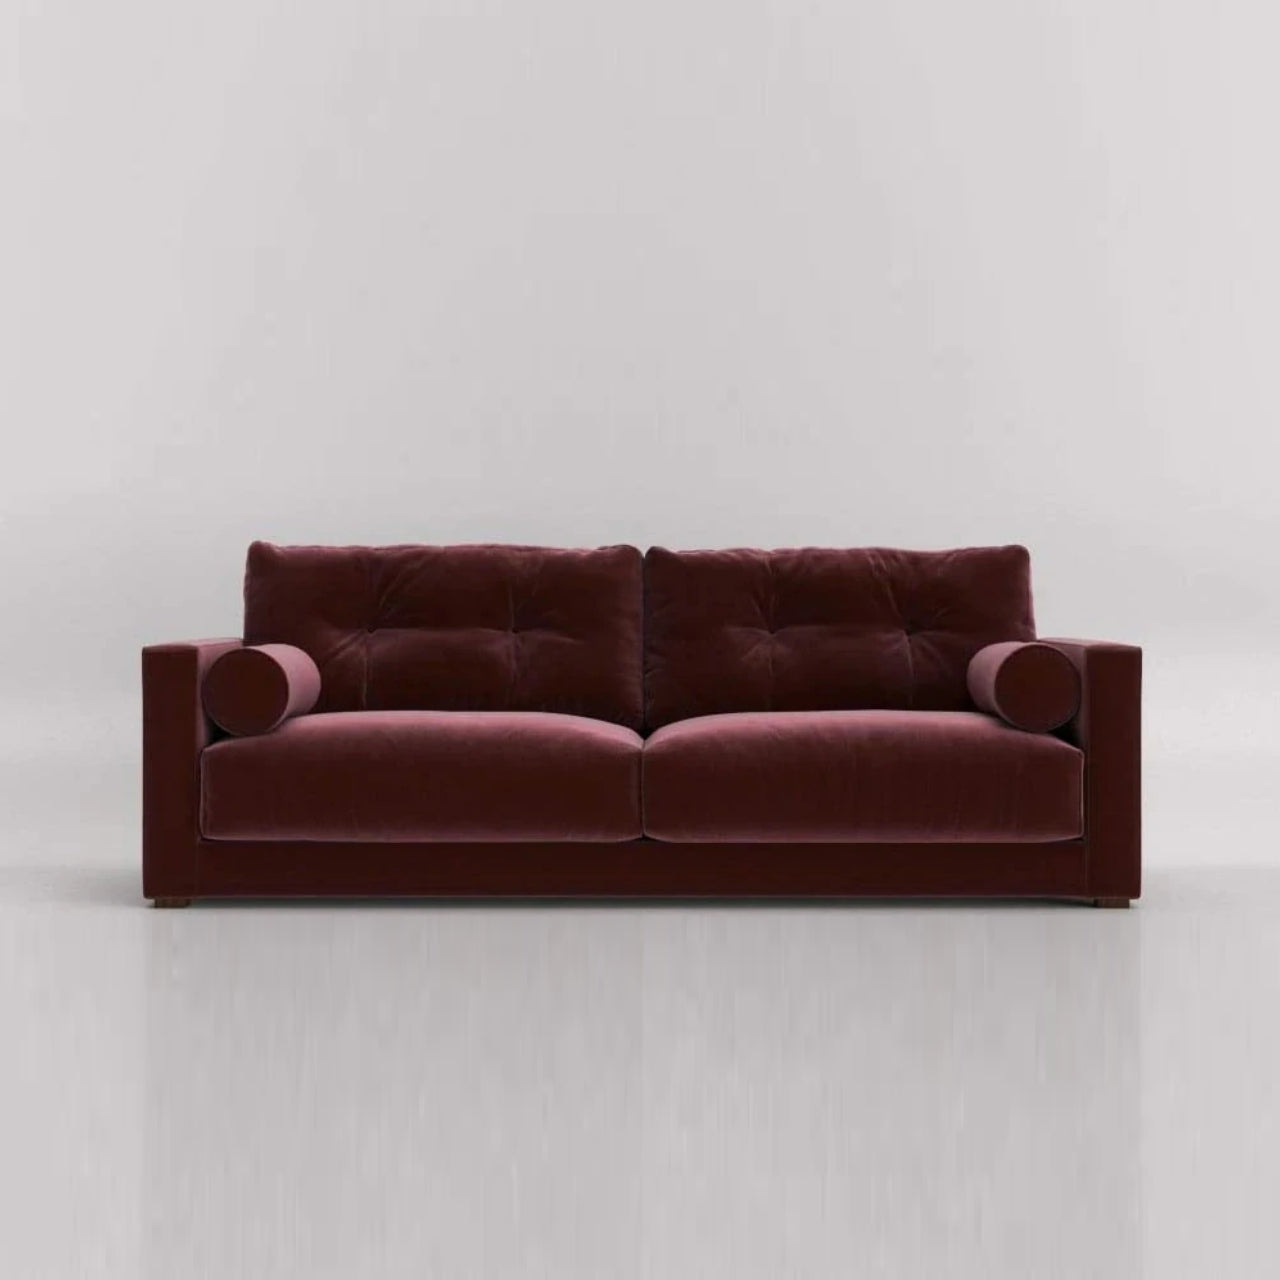 3 Seater Sofa Set- Ultra Fabric Sofa Set